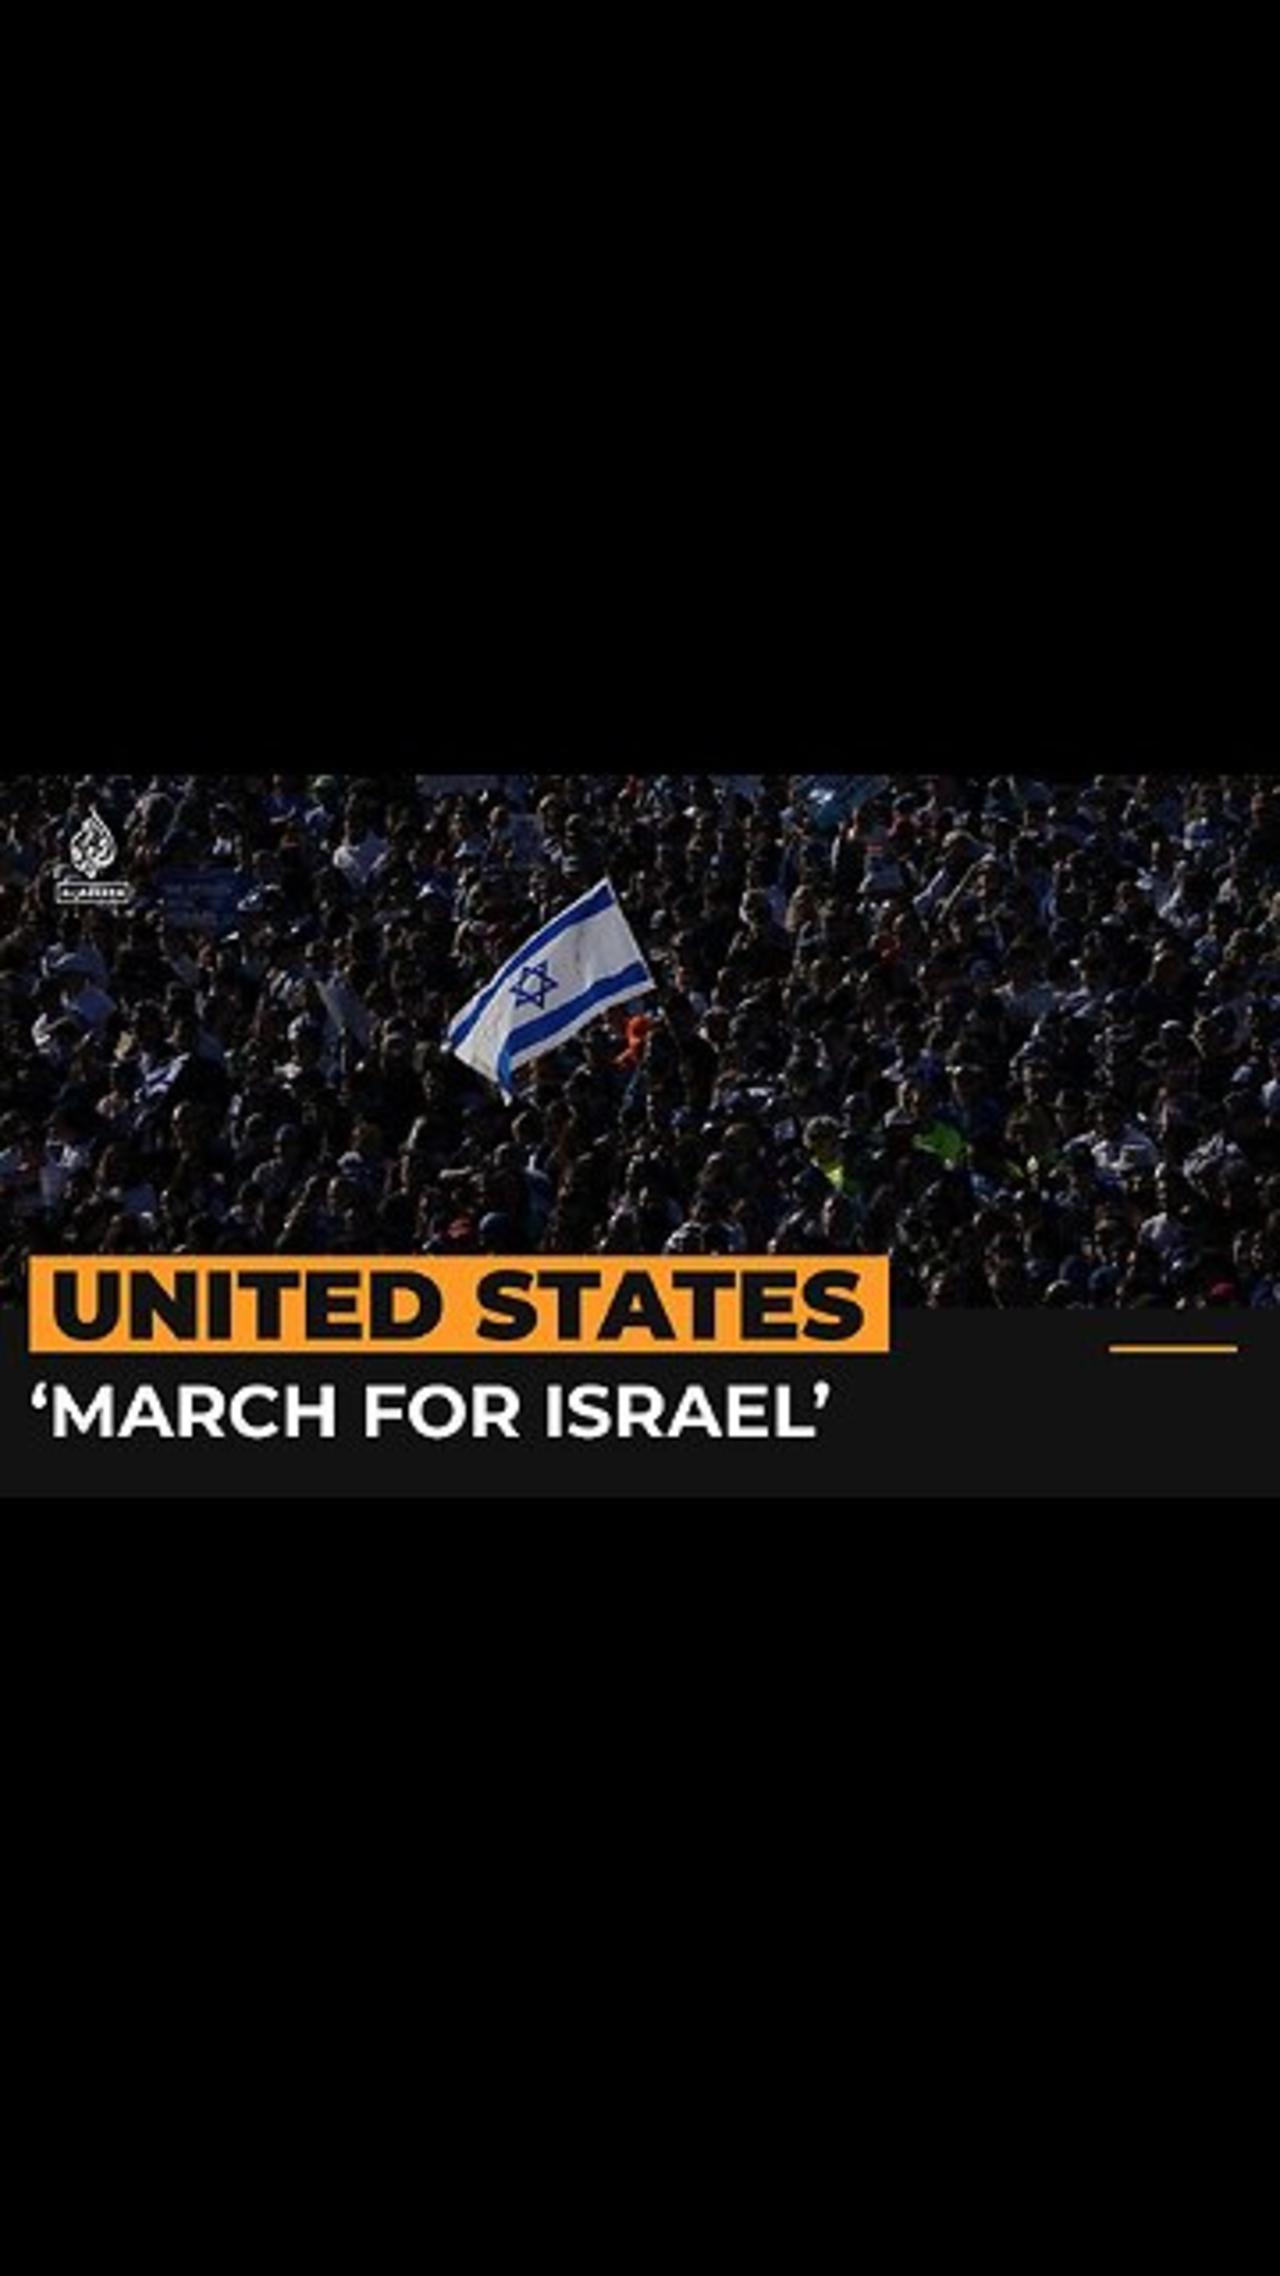 Israel supporters gather in Washington DC amid Gaza war | Al Jazeera Newsfeed